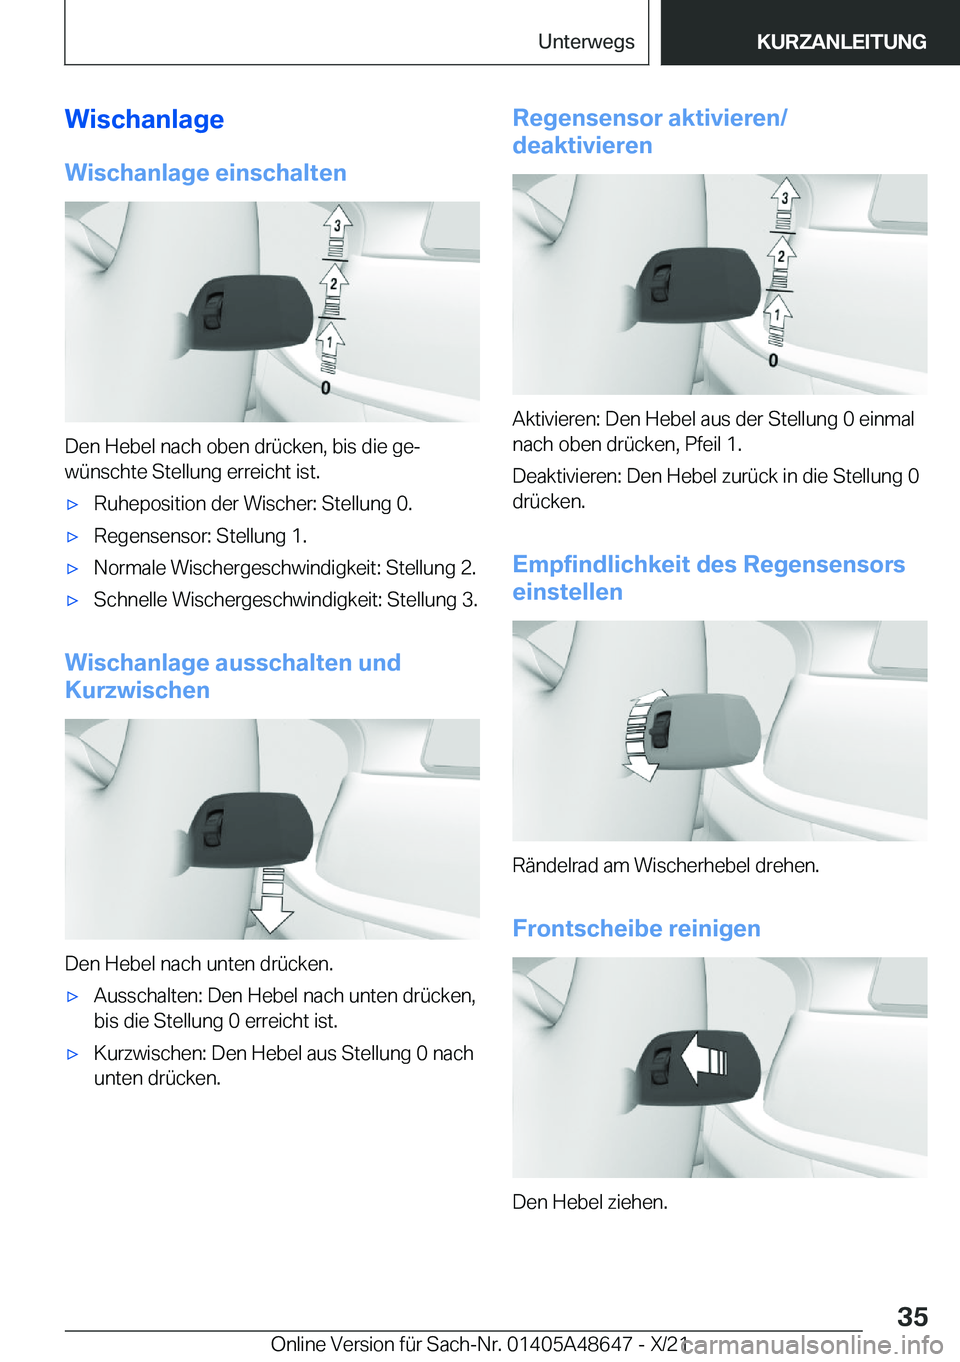 BMW 3 SERIES 2022  Betriebsanleitungen (in German) �W�i�s�c�h�a�n�l�a�g�e
�W�i�s�c�h�a�n�l�a�g�e��e�i�n�s�c�h�a�l�t�e�n
�D�e�n��H�e�b�e�l��n�a�c�h��o�b�e�n��d�r�